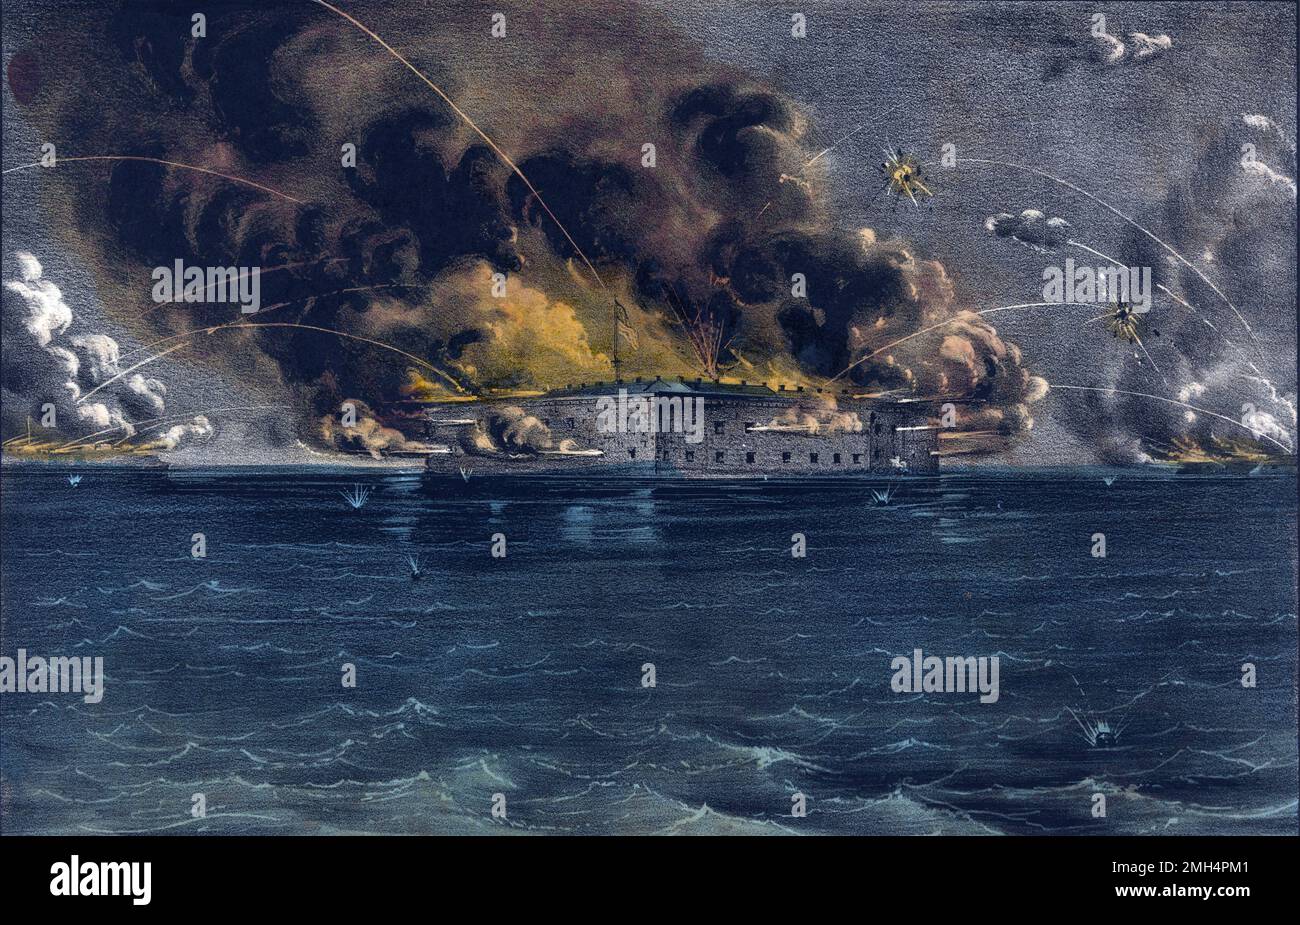 Die Bombardierung von Fort Sumter. Die Bombardierung und Gefangennahme von Fort Sumter durch die Konföderierten war die Eröffnungsschlacht im Amerikanischen Bürgerkrieg. Stockfoto